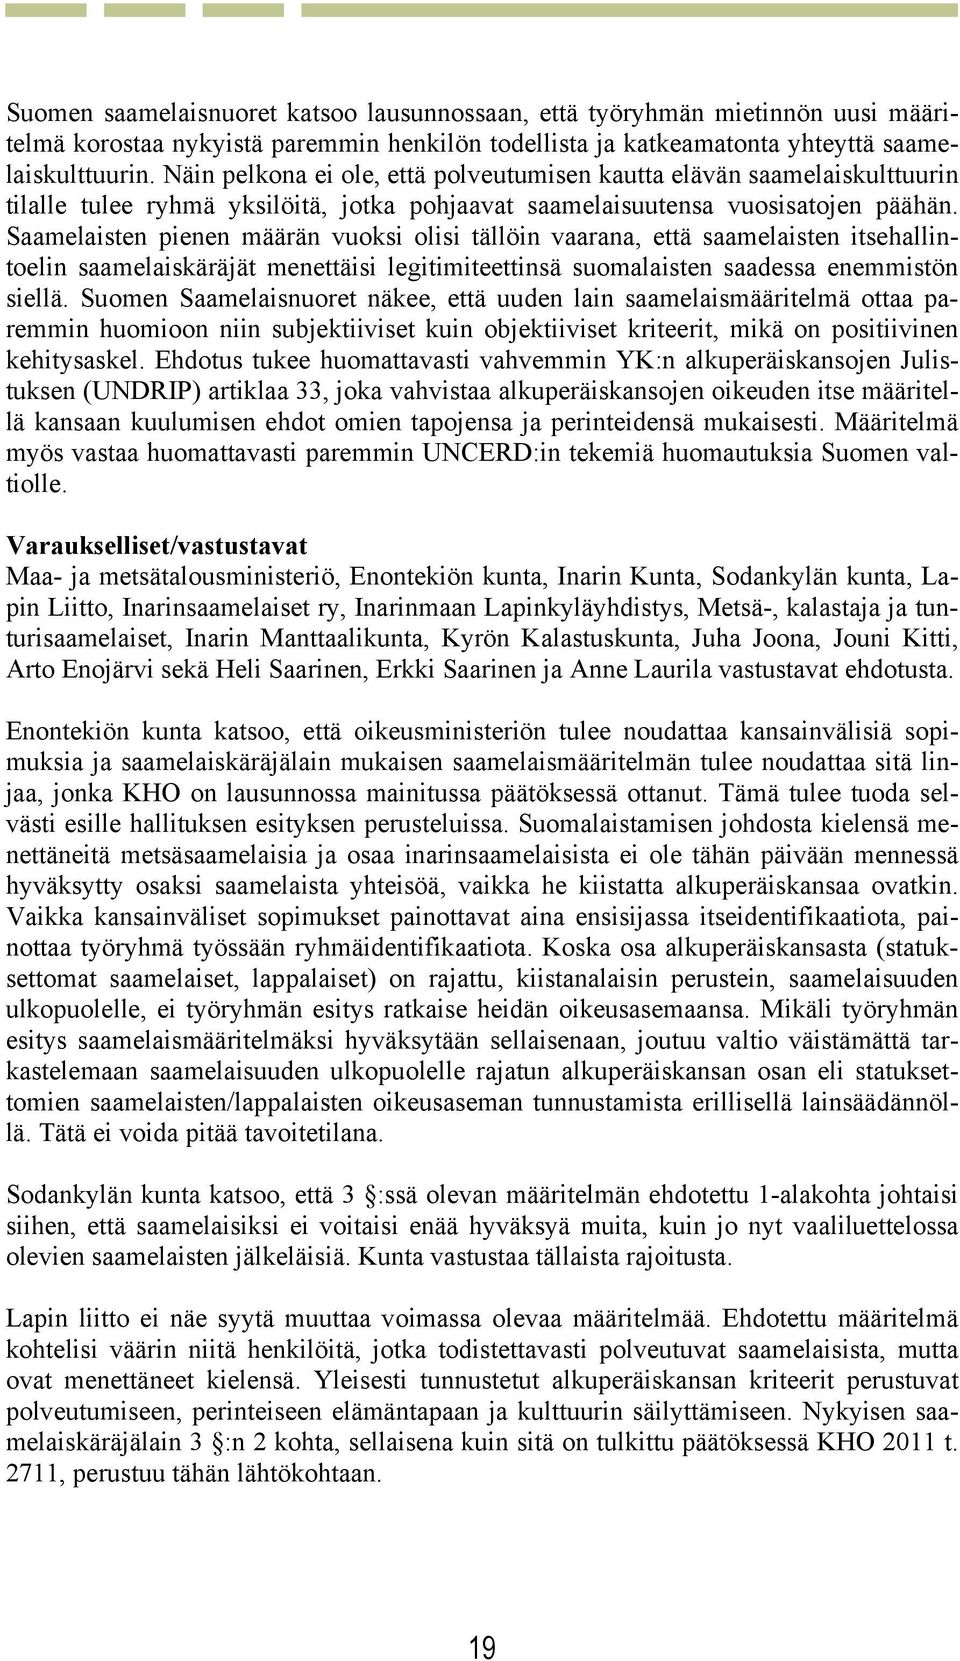 Saamelaisten pienen määrän vuoksi olisi tällöin vaarana, että saamelaisten itsehallintoelin saamelaiskäräjät menettäisi legitimiteettinsä suomalaisten saadessa enemmistön siellä.